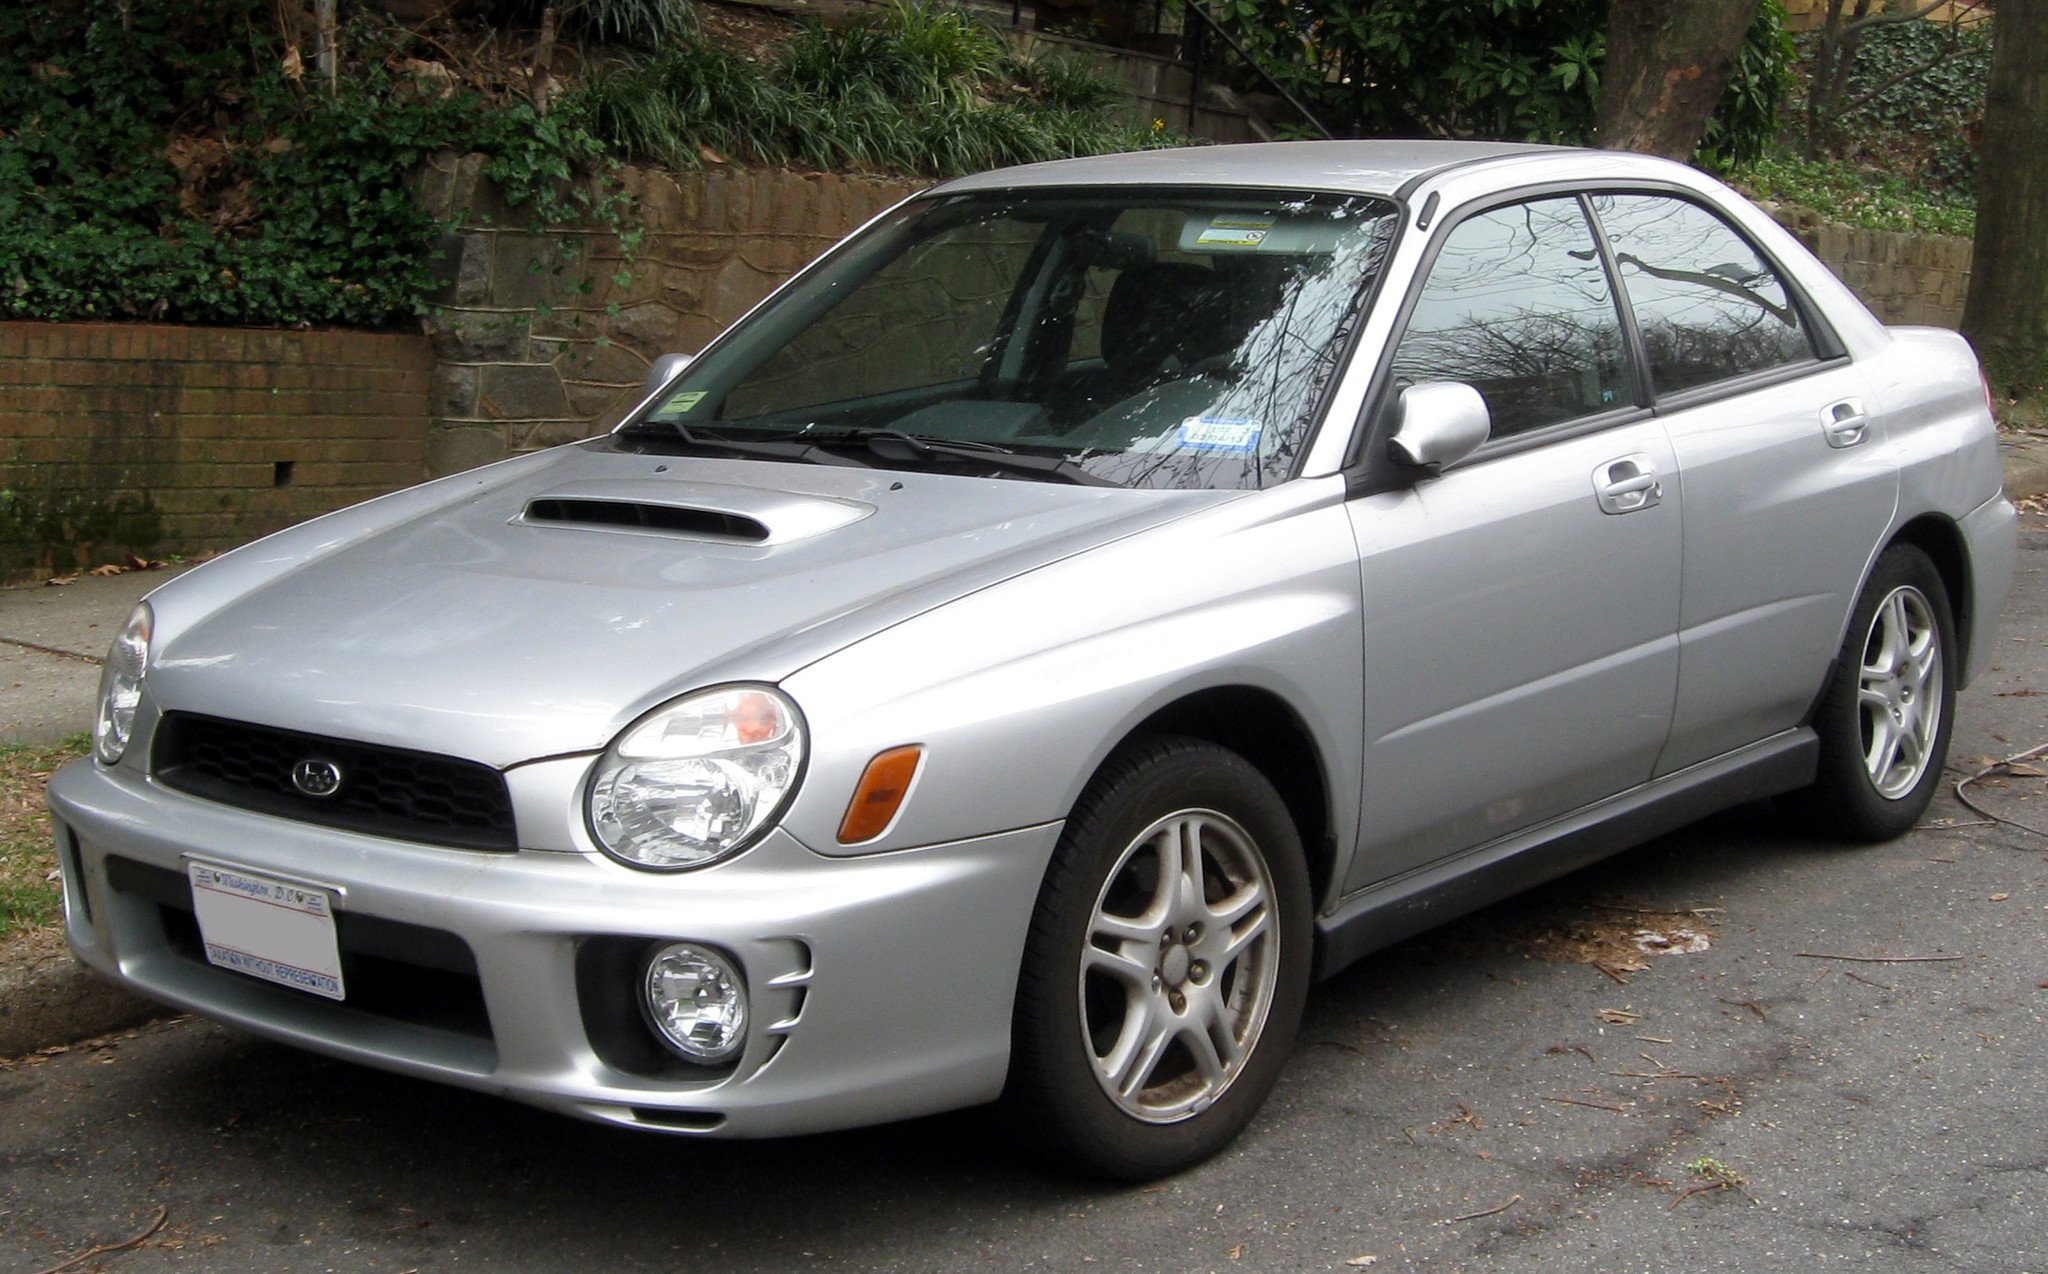 2002 Subaru Impreza Factory Service Repair Manual